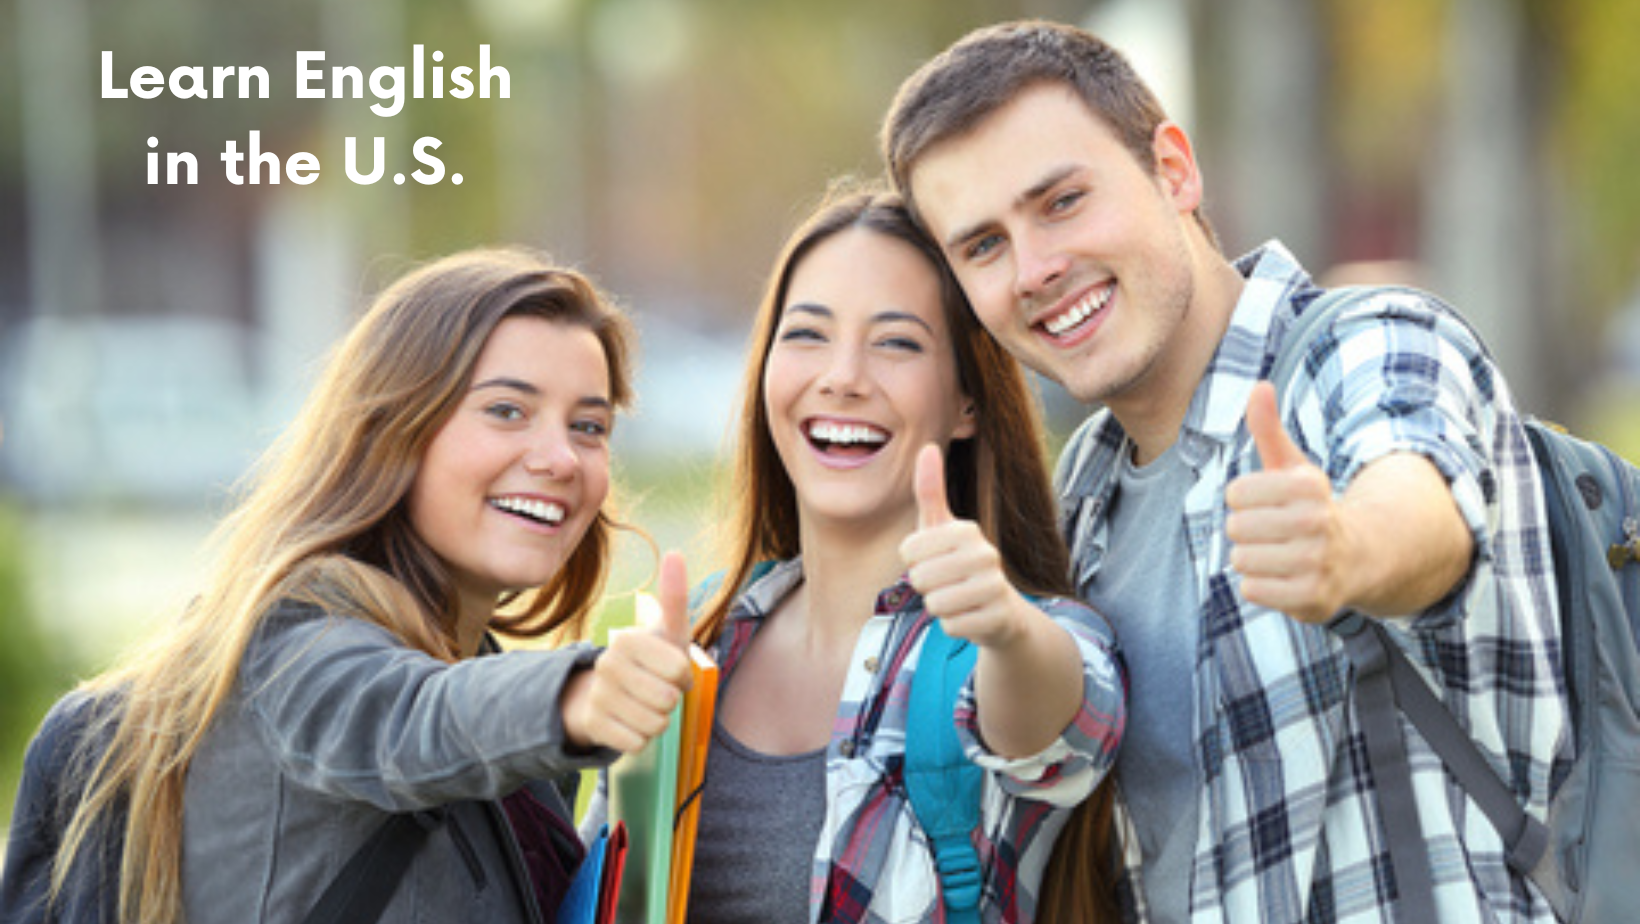 米国での英語プログラムとコースを分析および評価します。